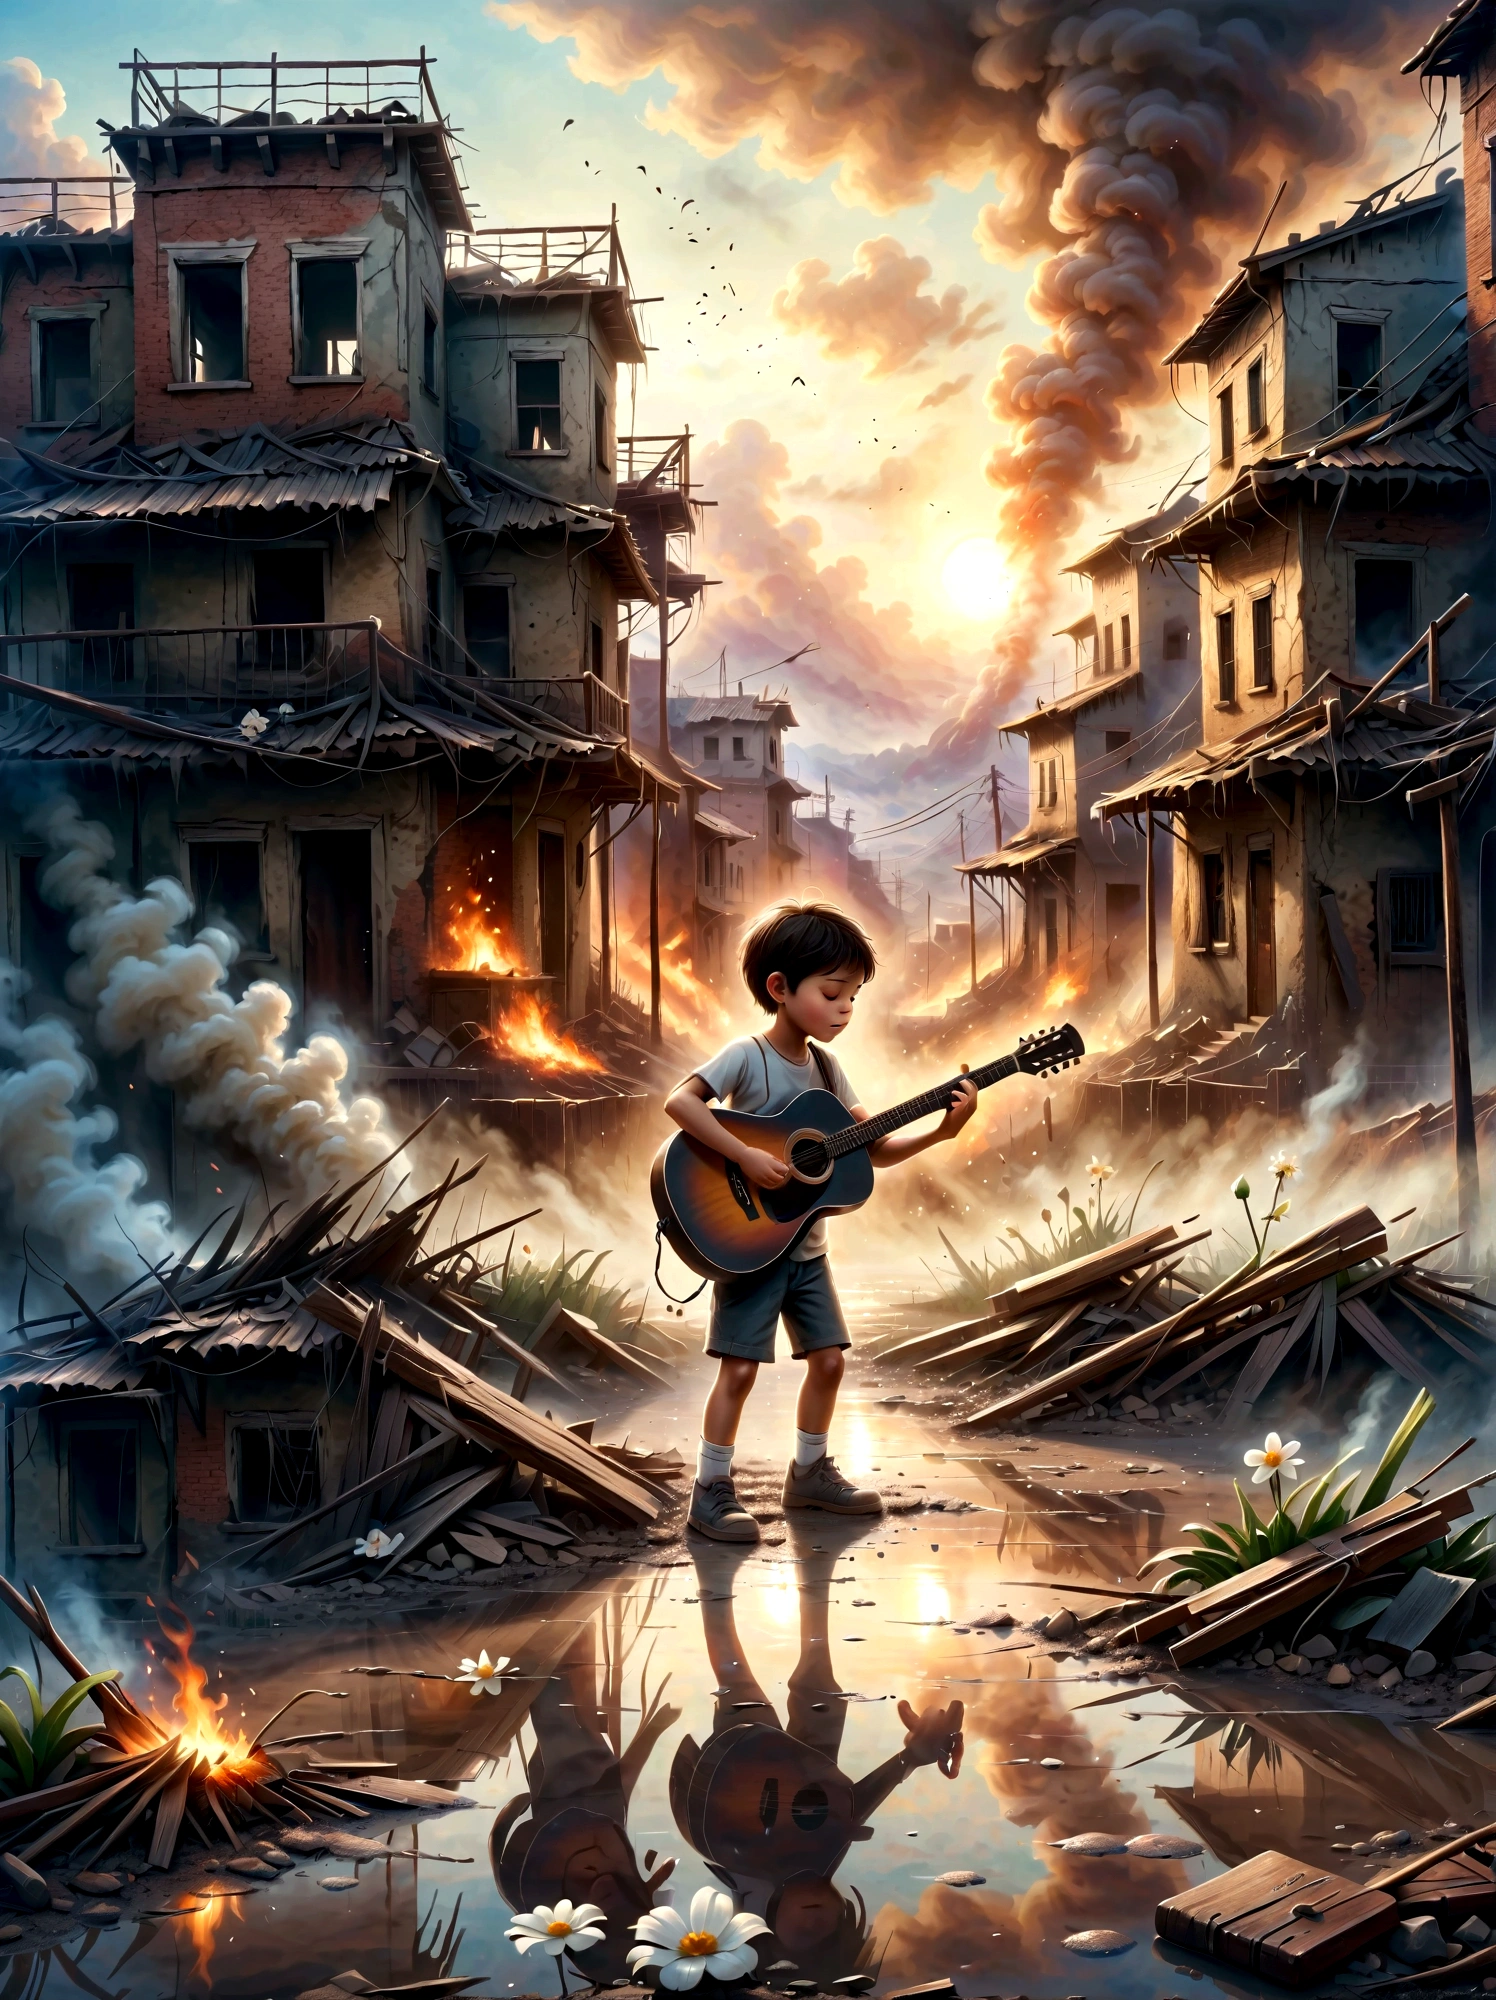 戦争の真っ只中, スモッグの廃墟, Aはギターを弾いている. このシーンは周囲の荒廃と人々の無邪気さの鮮明な対比を捉えている。。 . 廃墟には瓦礫や建物が溢れている, 煙と炎の背景. 子供&#39;表情はとても暗い, 厳しい現実を反映. 全体的な雰囲気は感動的で感動的である, 柔らかい色彩とドラマチックな照明を使って、音楽が表す荒廃と希望を強調します。..泥だらけの地面に小さな白い花が咲いた